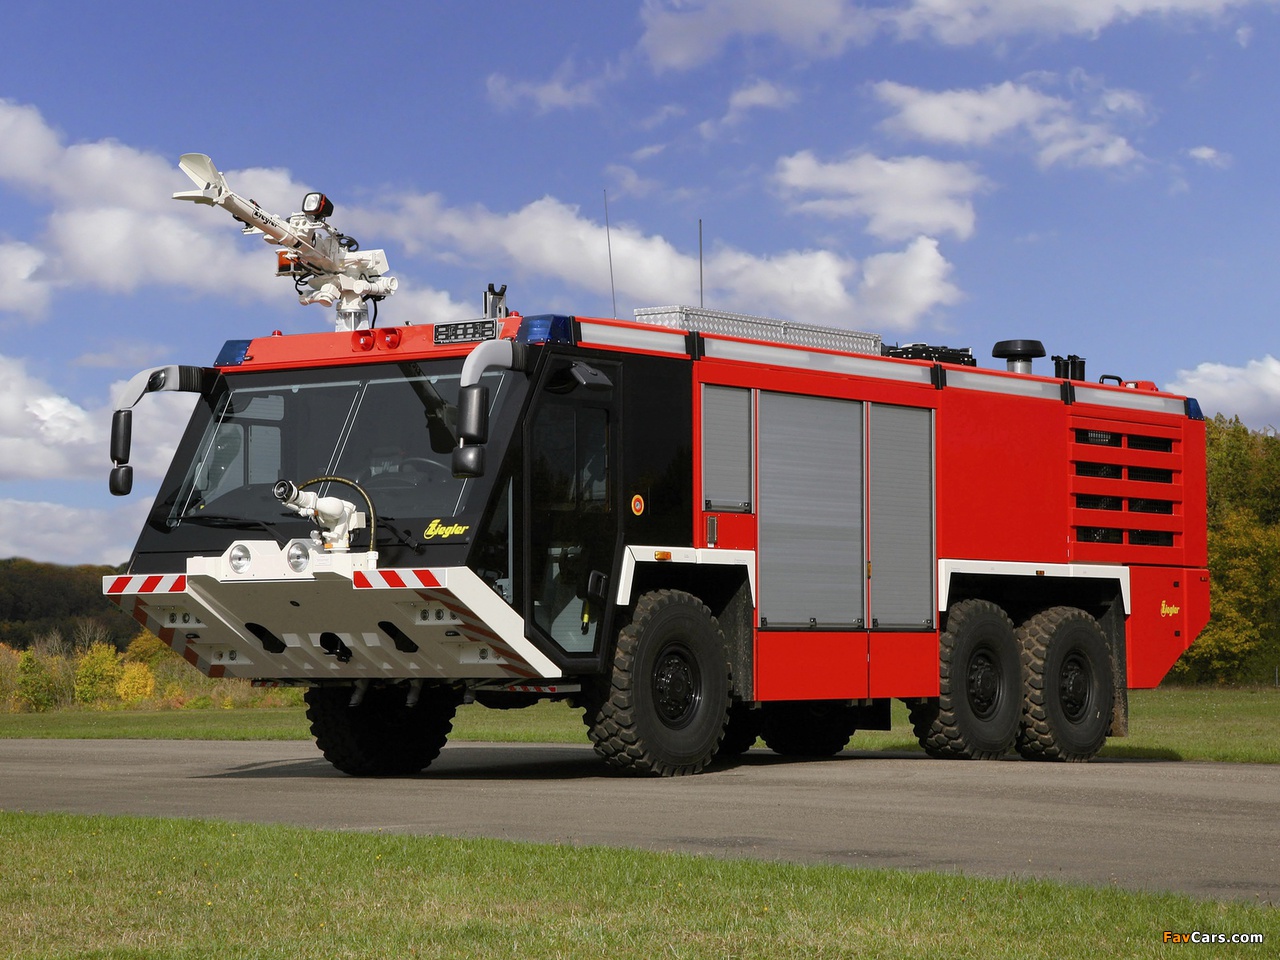 Пожарный автомобиль баз. Пожарная машина Ziegler VHF. Аэродромный пожарный автомобиль Розенбауэр. Аэродромная пожарная техника. Пожарная техника Аэродромный пожарный автомобиль.